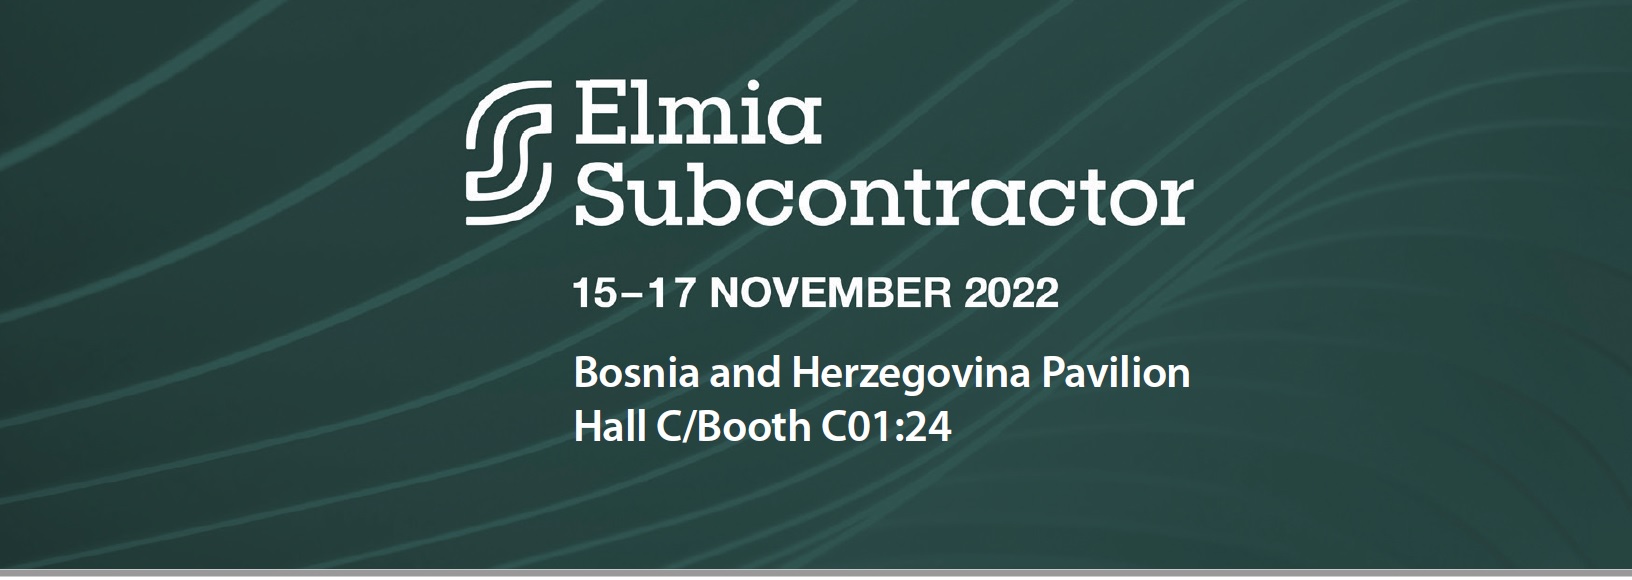 Metal Industry of Bosnia and Herzegovina at ELMIA Subcontractor, 15-17.11.2022., Jonkoping Sweden